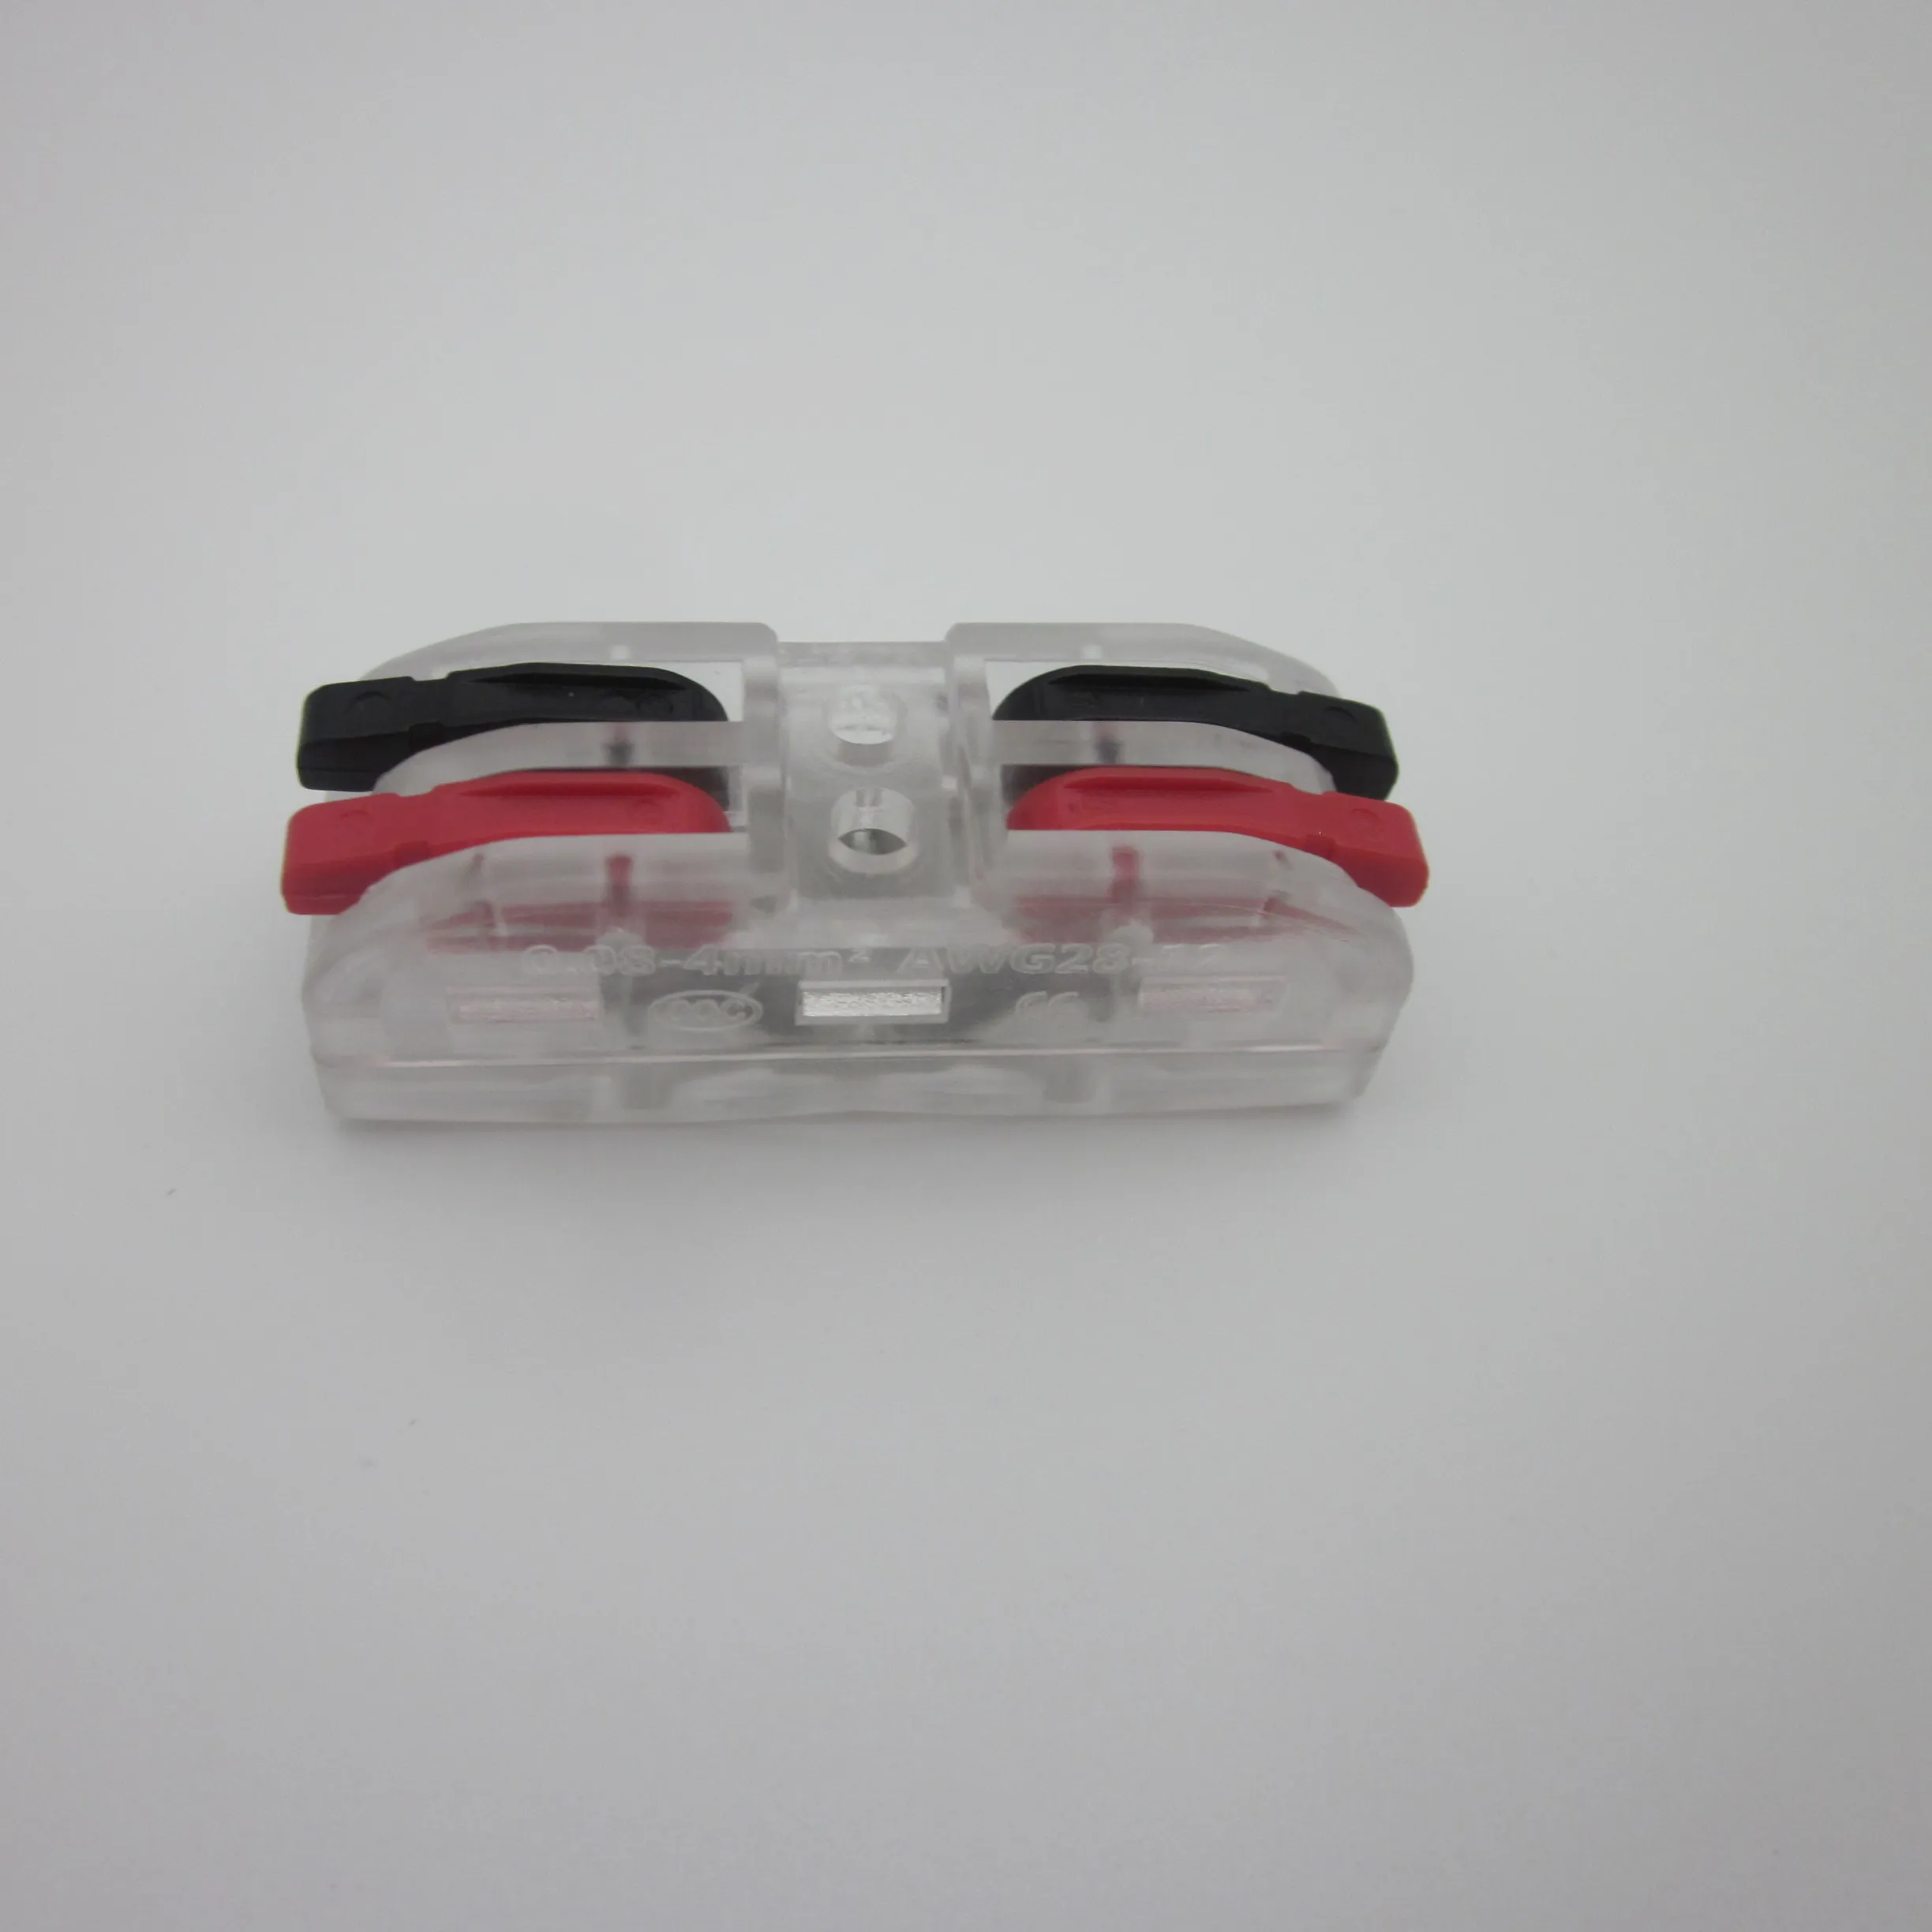 Connecteur de fil spl 2 à levier, certifié CE en chine, couleur transparente, bornier L N rouge noir